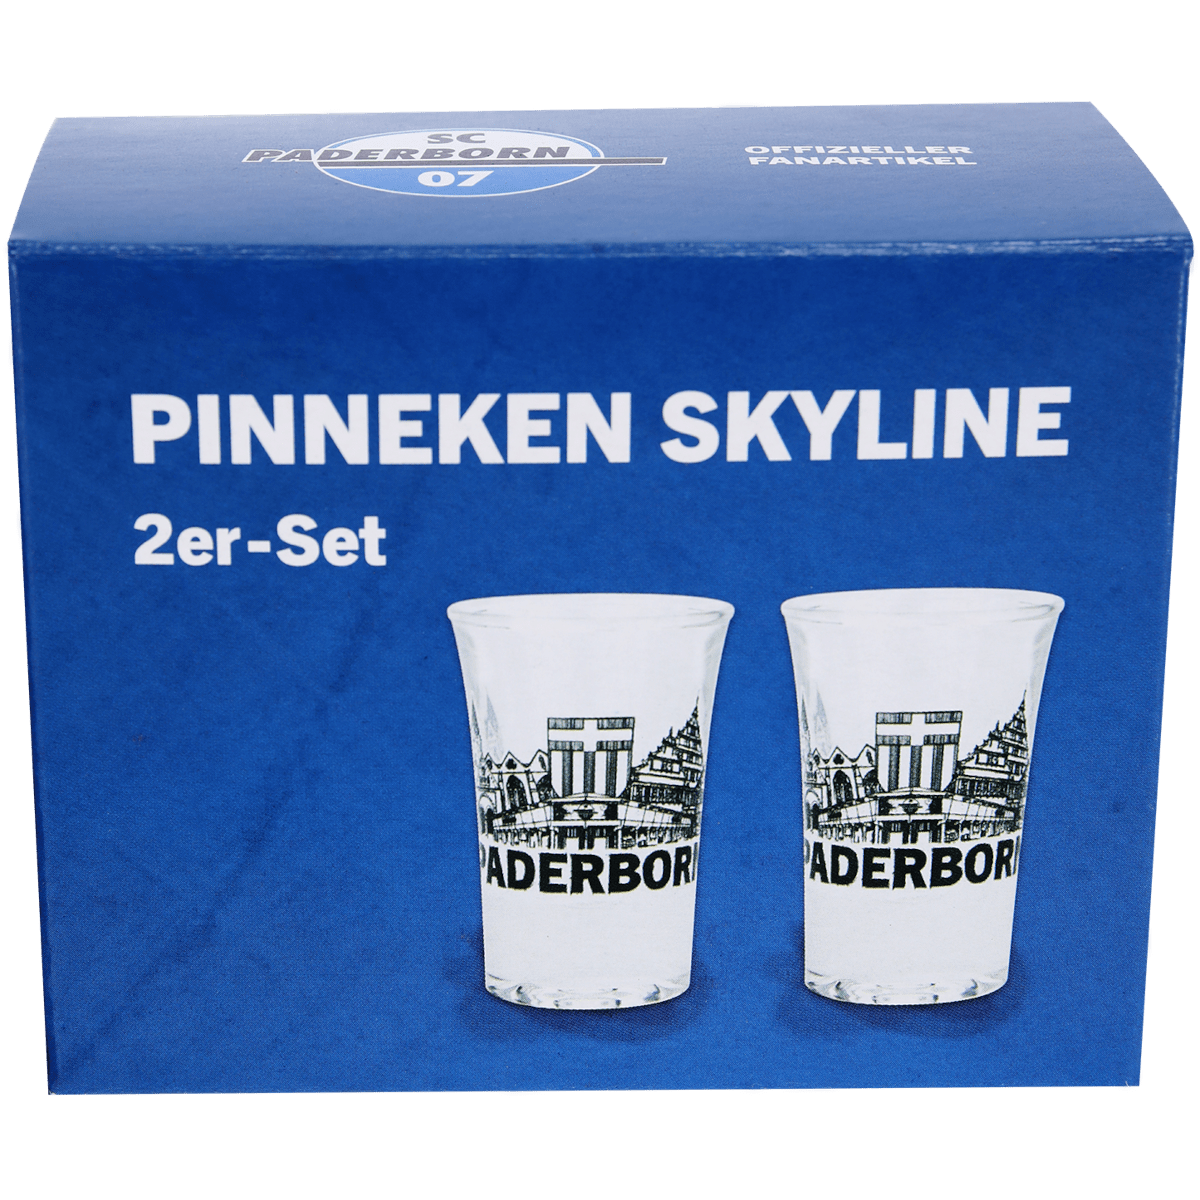 Pinneken Skyline 2er-Set